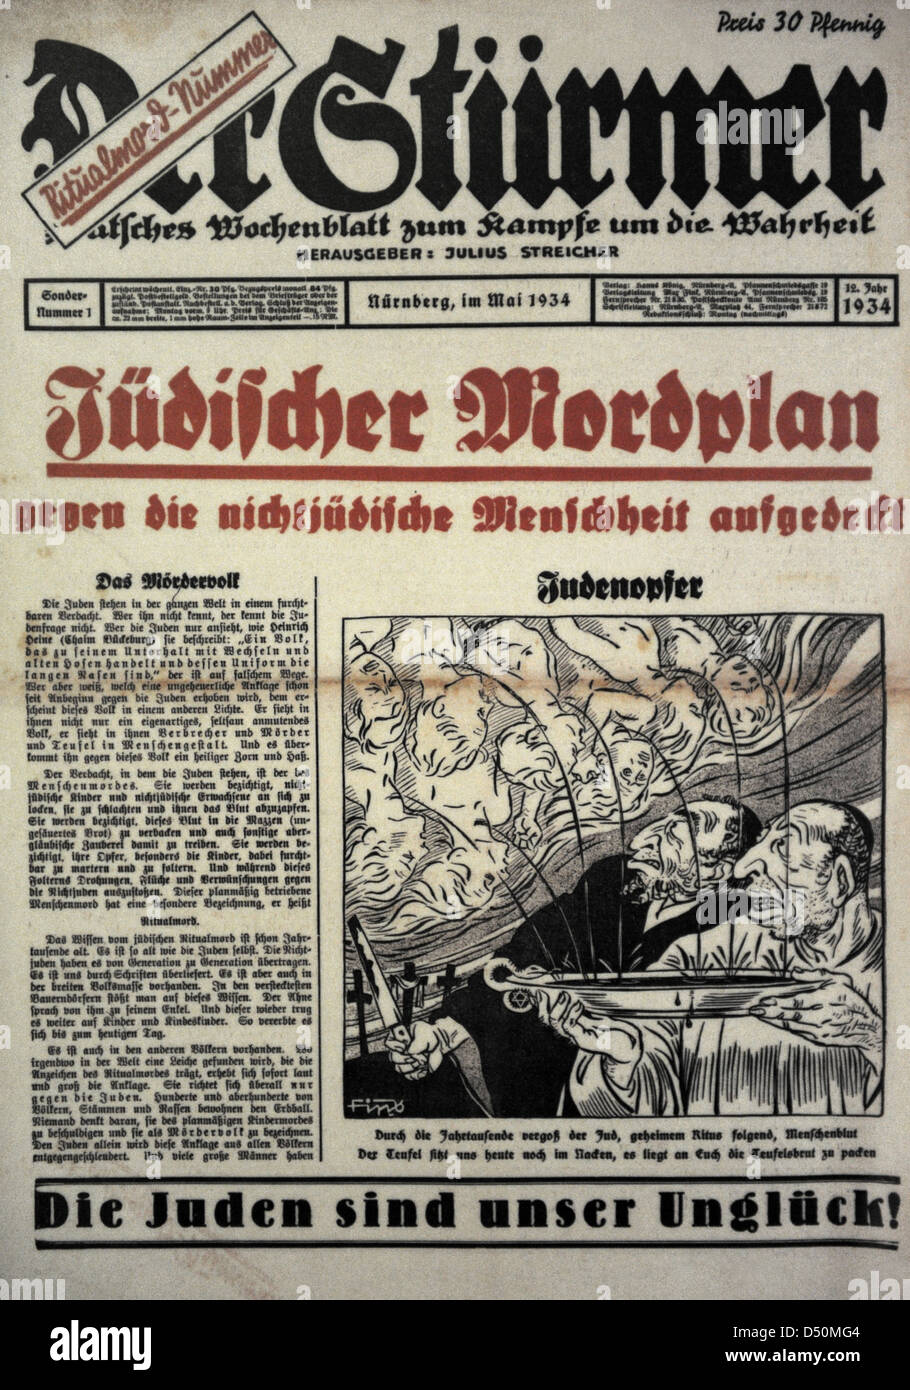 Der Pornographiesammlung. Wochenzeitung, herausgegeben von der NSDAP Julius Streicher in Nürnberg. Titelseite. Sonderheft 1. Mai 1934. Dachau. Stockfoto